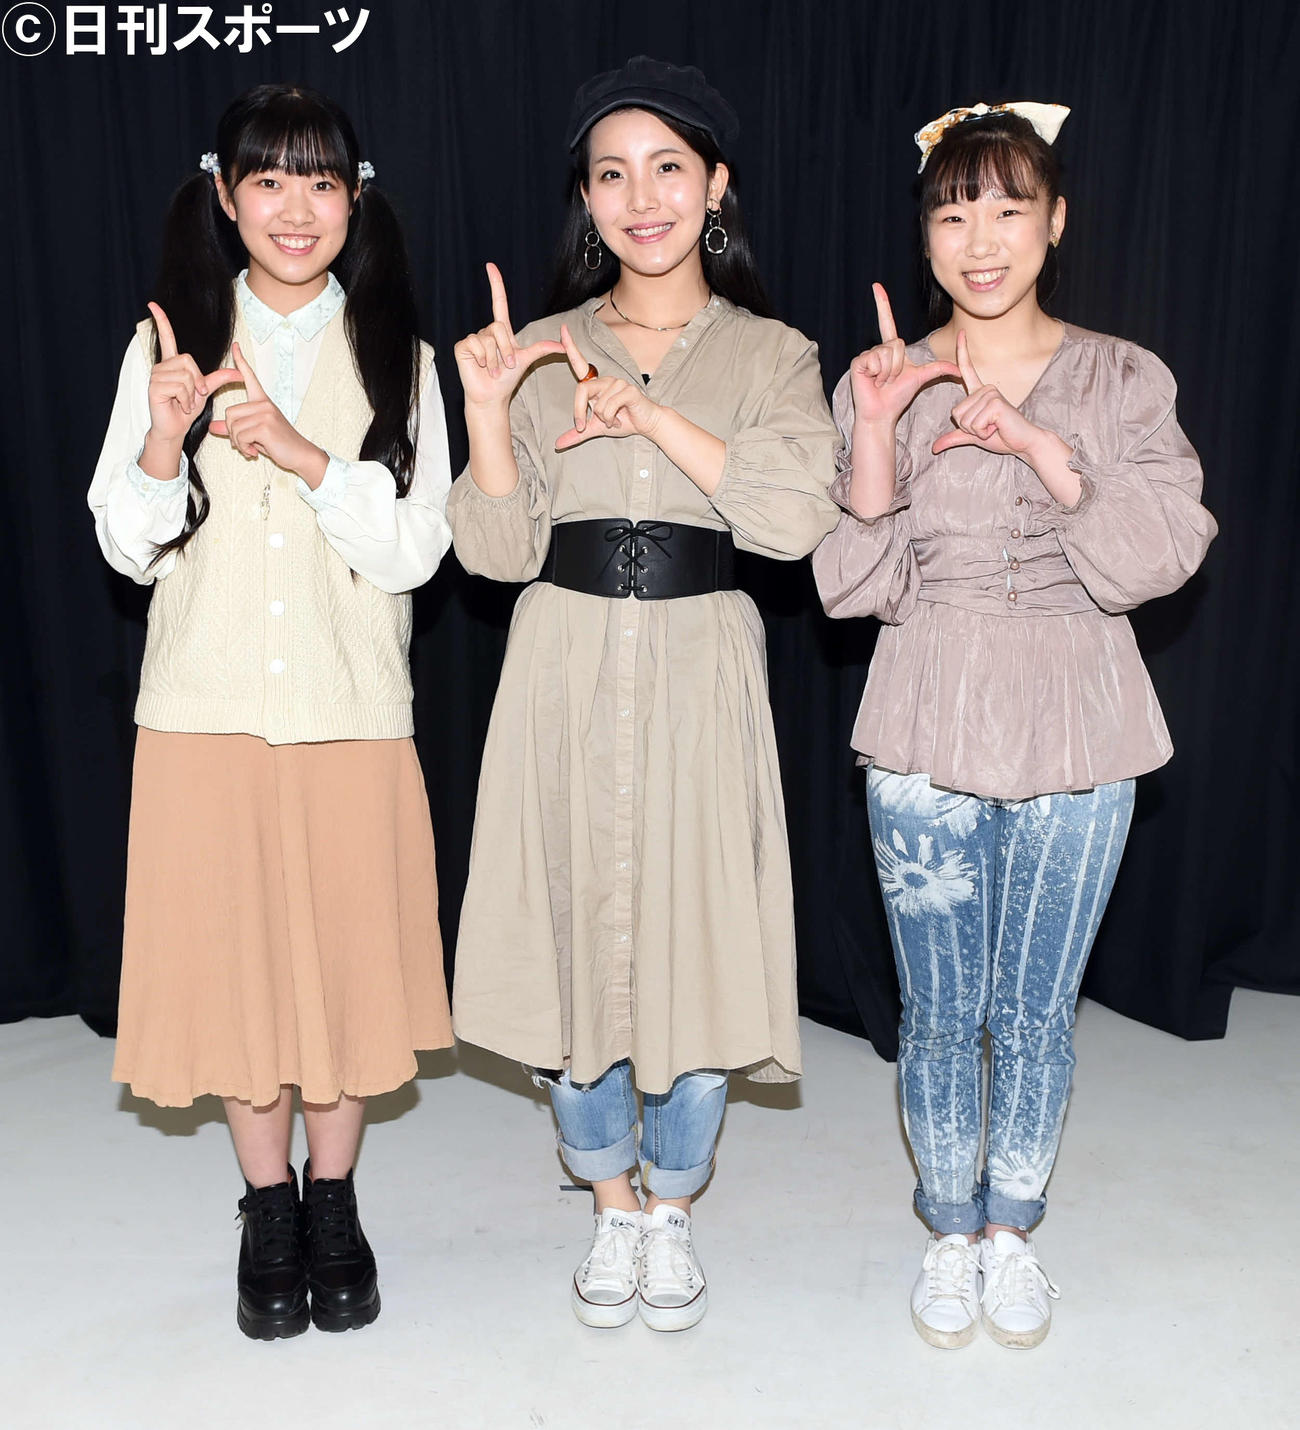 オリジナルポーズをするみちのく仙台ORI☆姫隊。左からSEIKA、NODOCA、MIHO（撮影・山田愛斗）